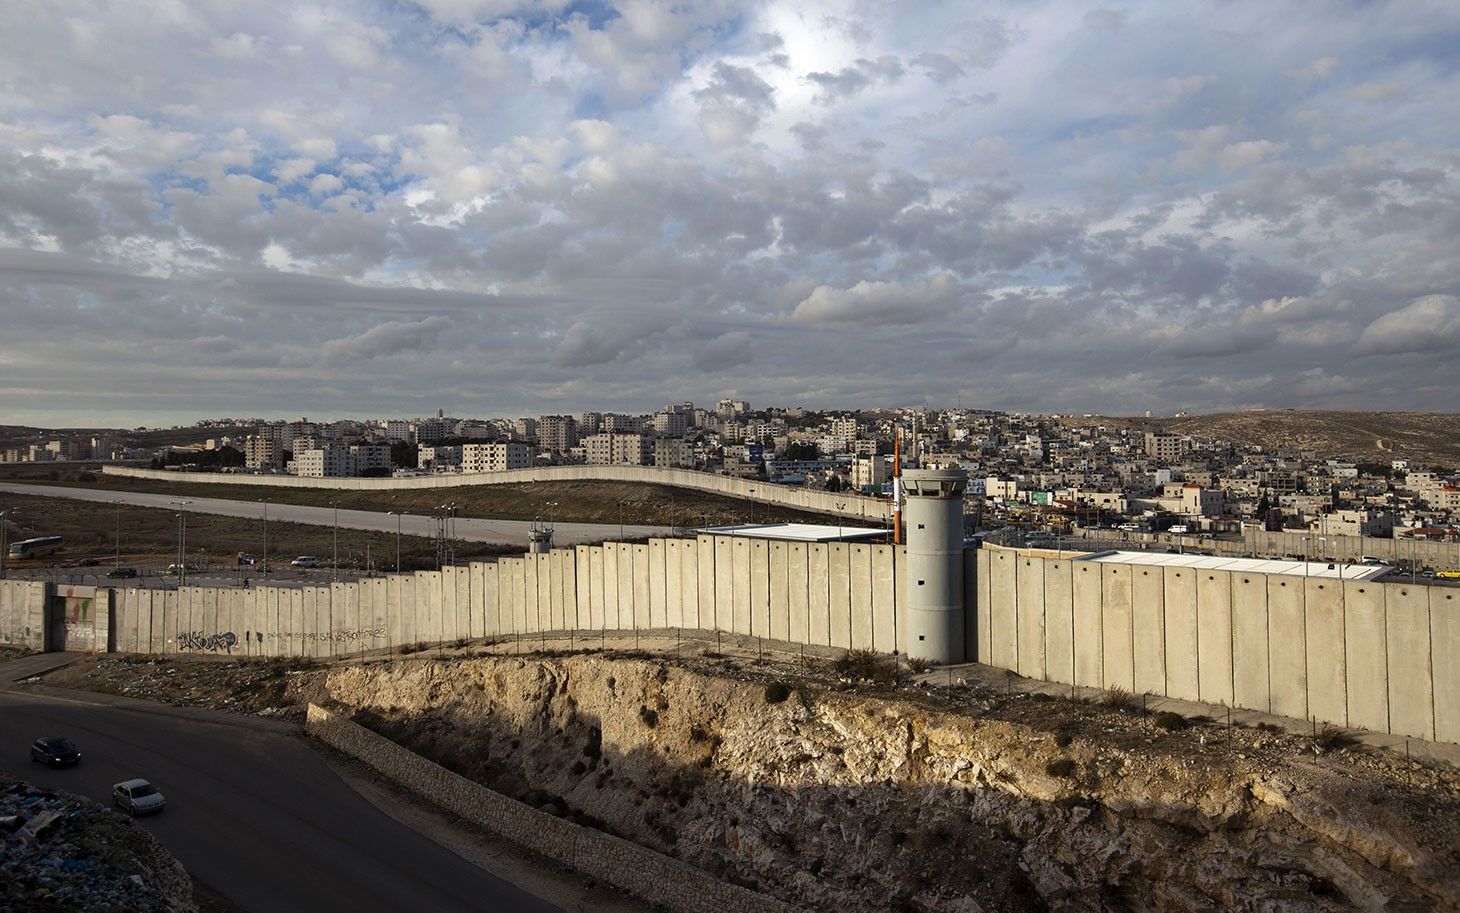 भारत सरहद पर बनाएगा पक्की दीवार, पढ़िए इज़रायल-फलस्तीन दीवार की कहानी